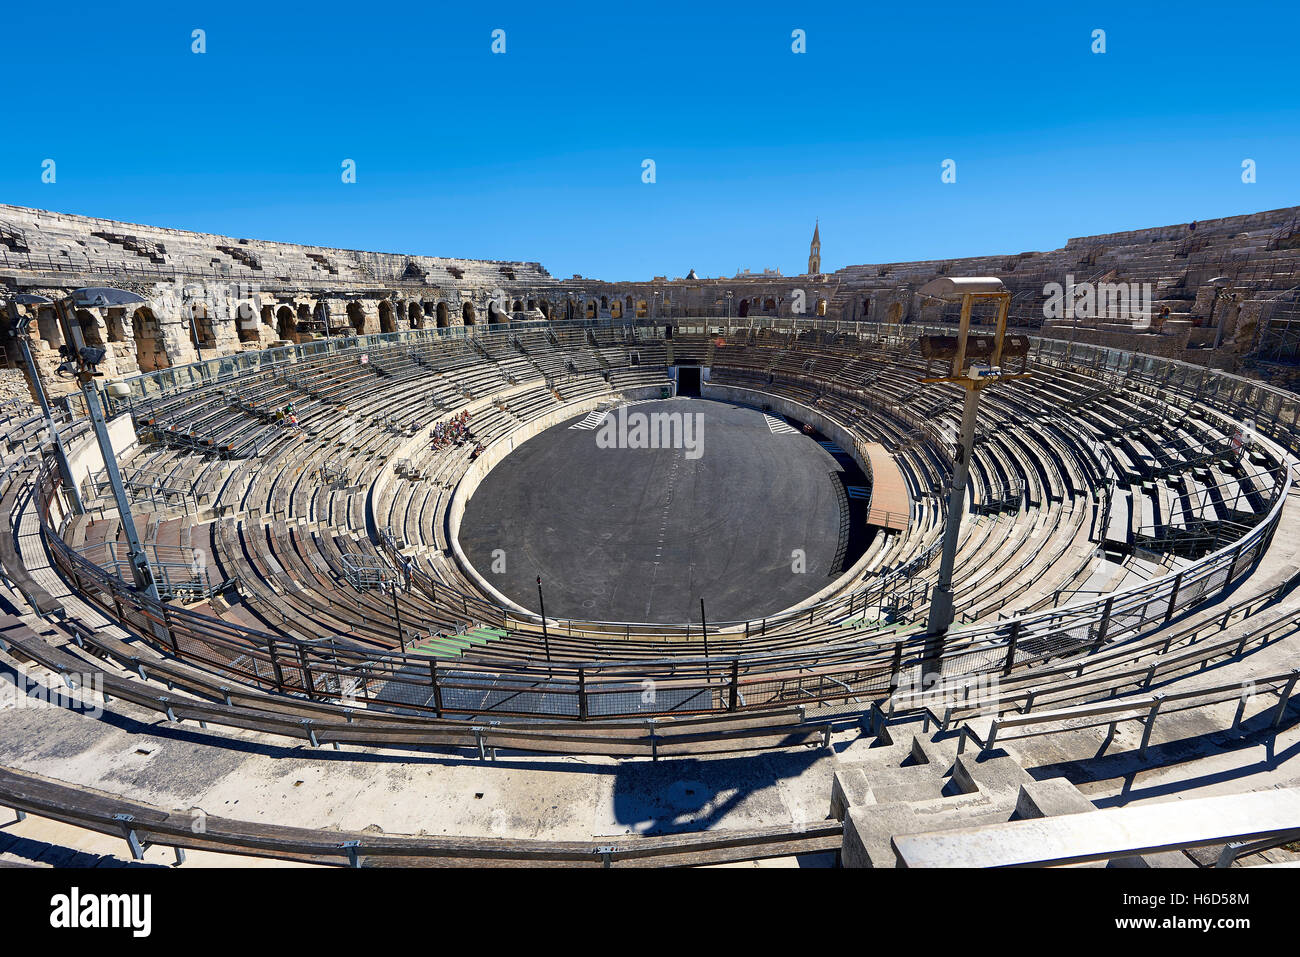 Innenraum der Arena Nemes, ein Roman Ampitheatre gebaut um 70 n. Chr., Nimes, Frankreich Stockfoto